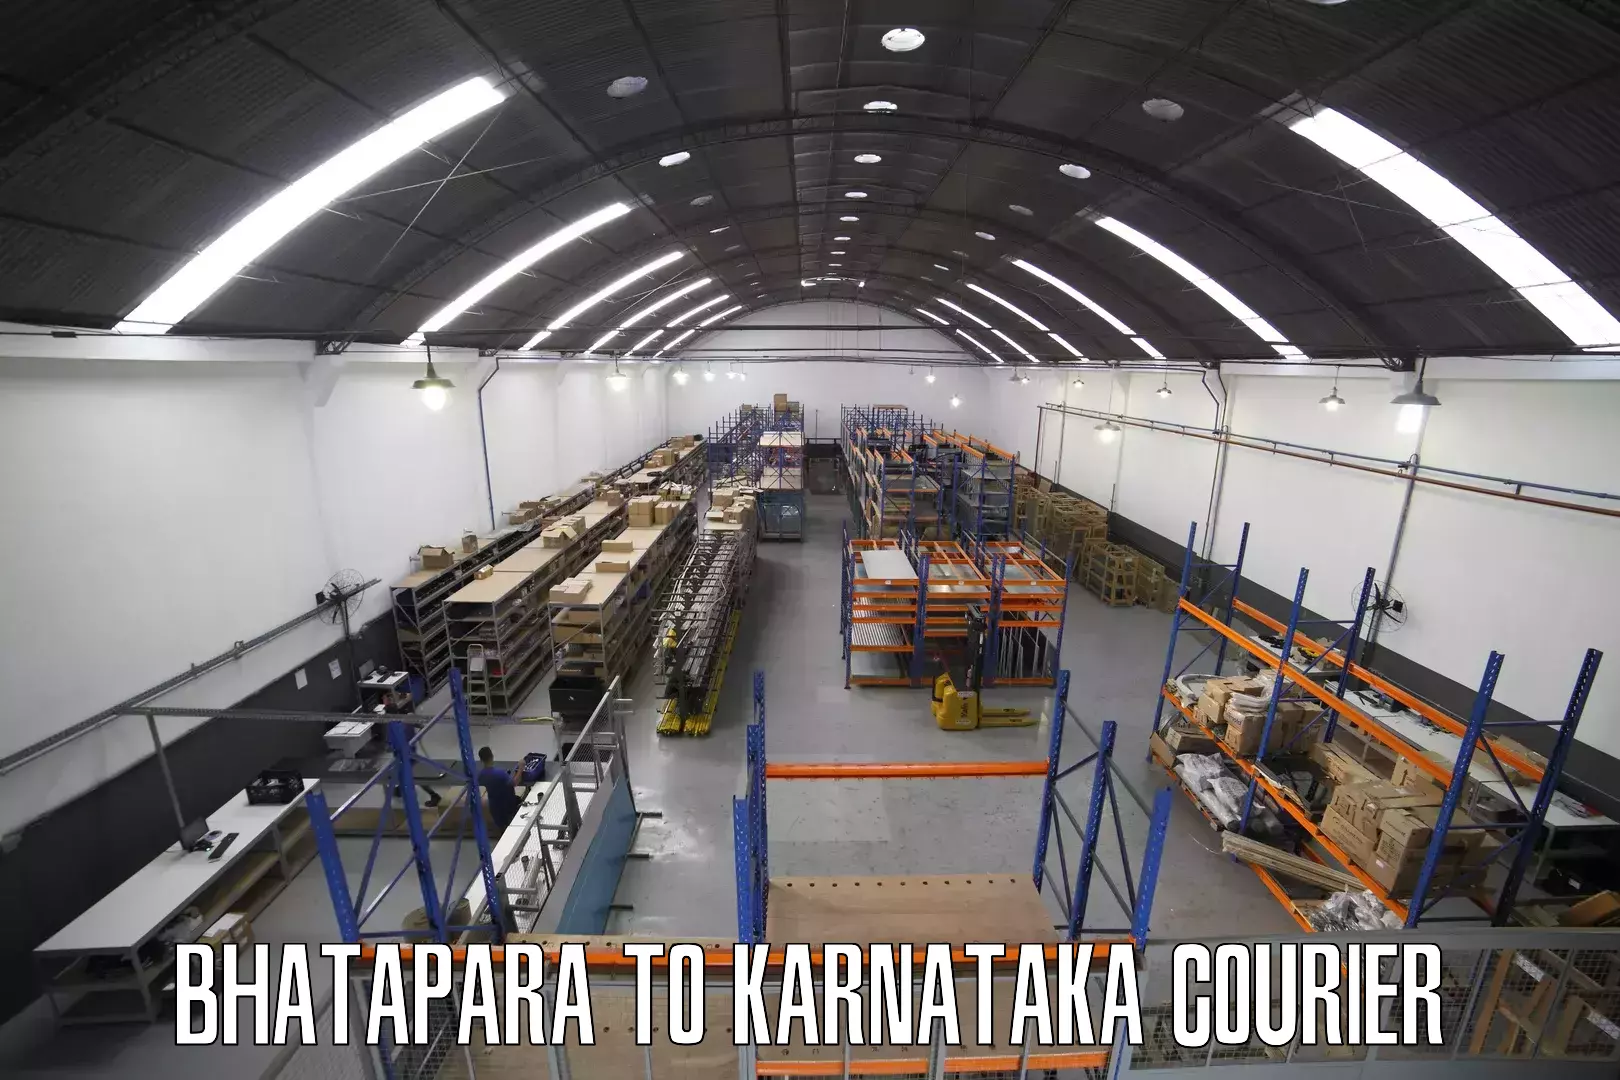 Courier service innovation Bhatapara to Kulshekar